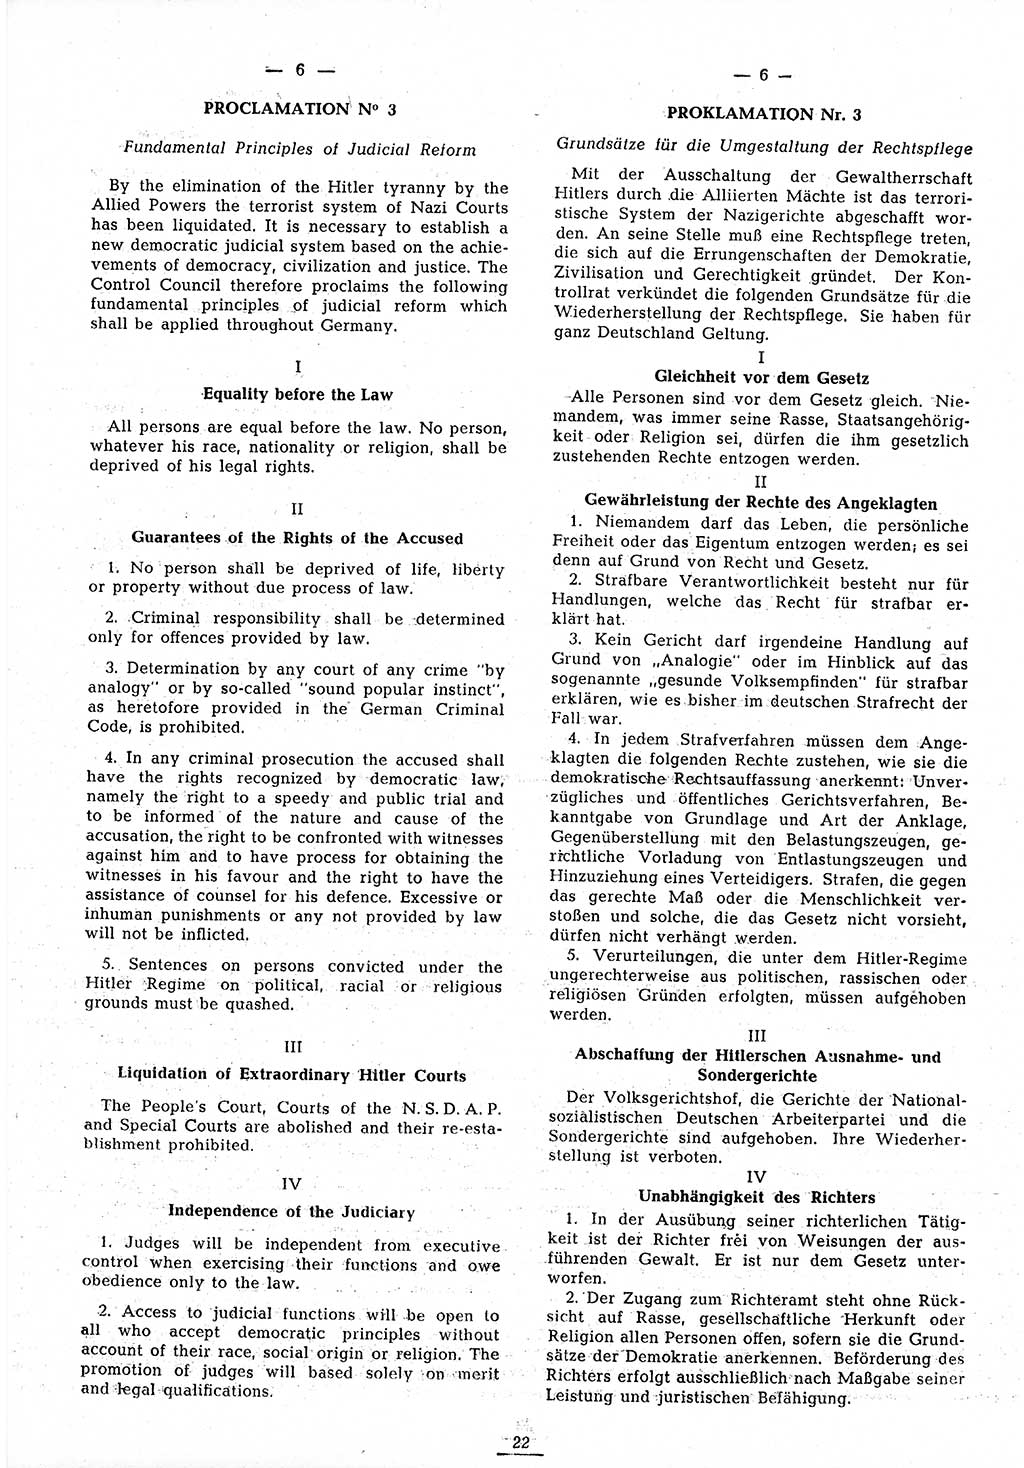 Amtsblatt des Kontrollrats (ABlKR) in Deutschland 1945, Seite 22/2 (ABlKR Dtl. 1945, S. 22/2)